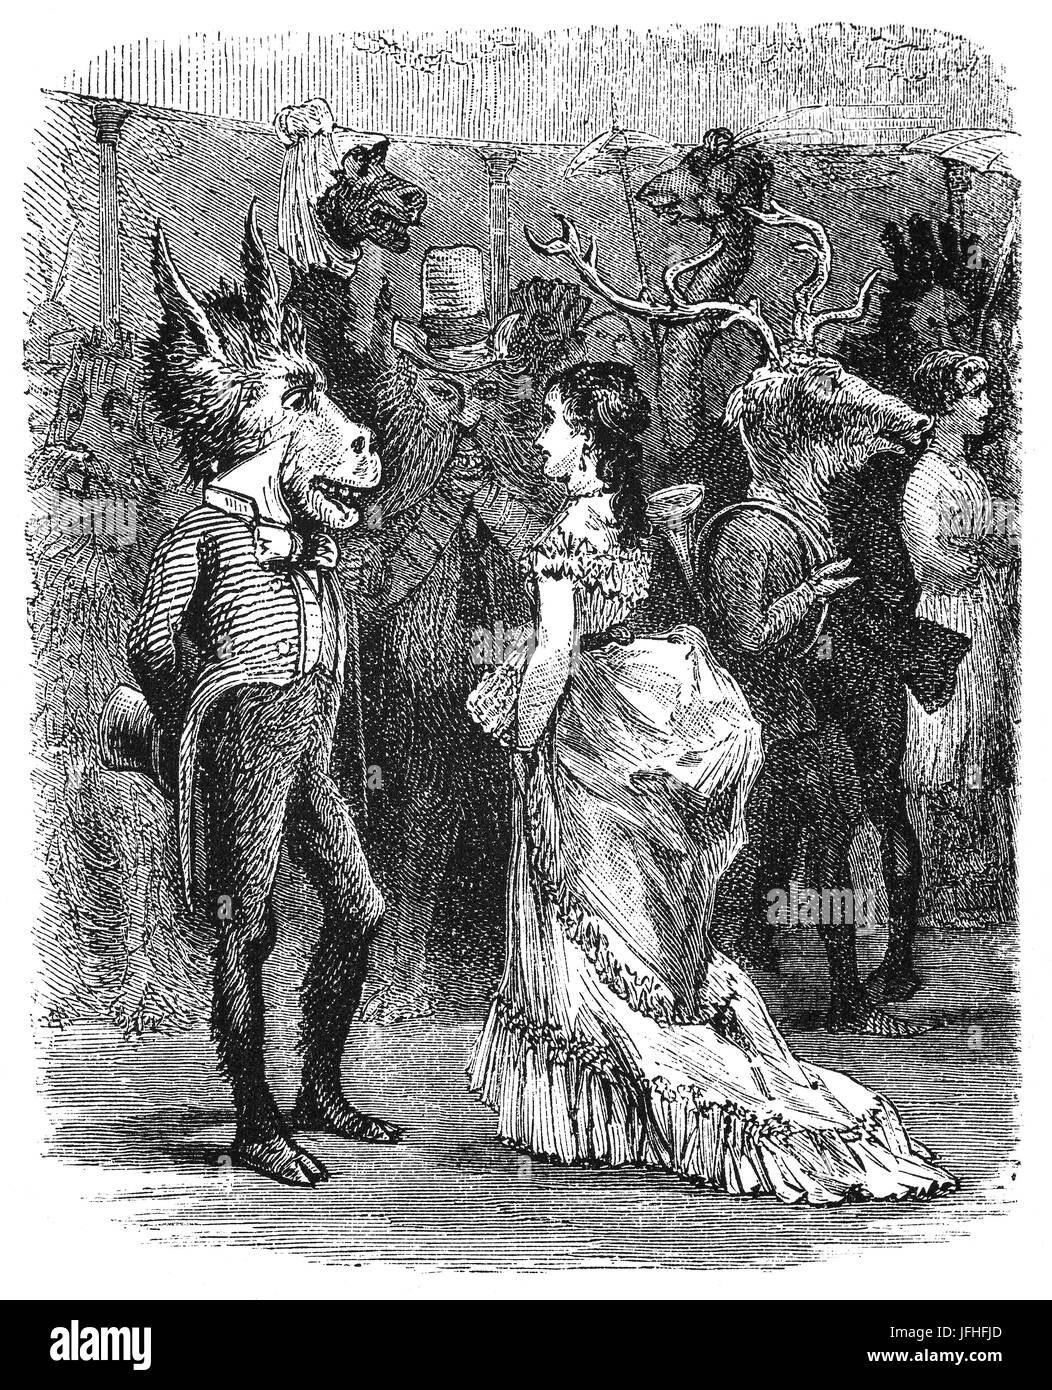 1879 : un groupe de fêtards durant Mardi Gras Carnival, La Nouvelle-Orléans, Louisiane, États-Unis d'Amérique Banque D'Images